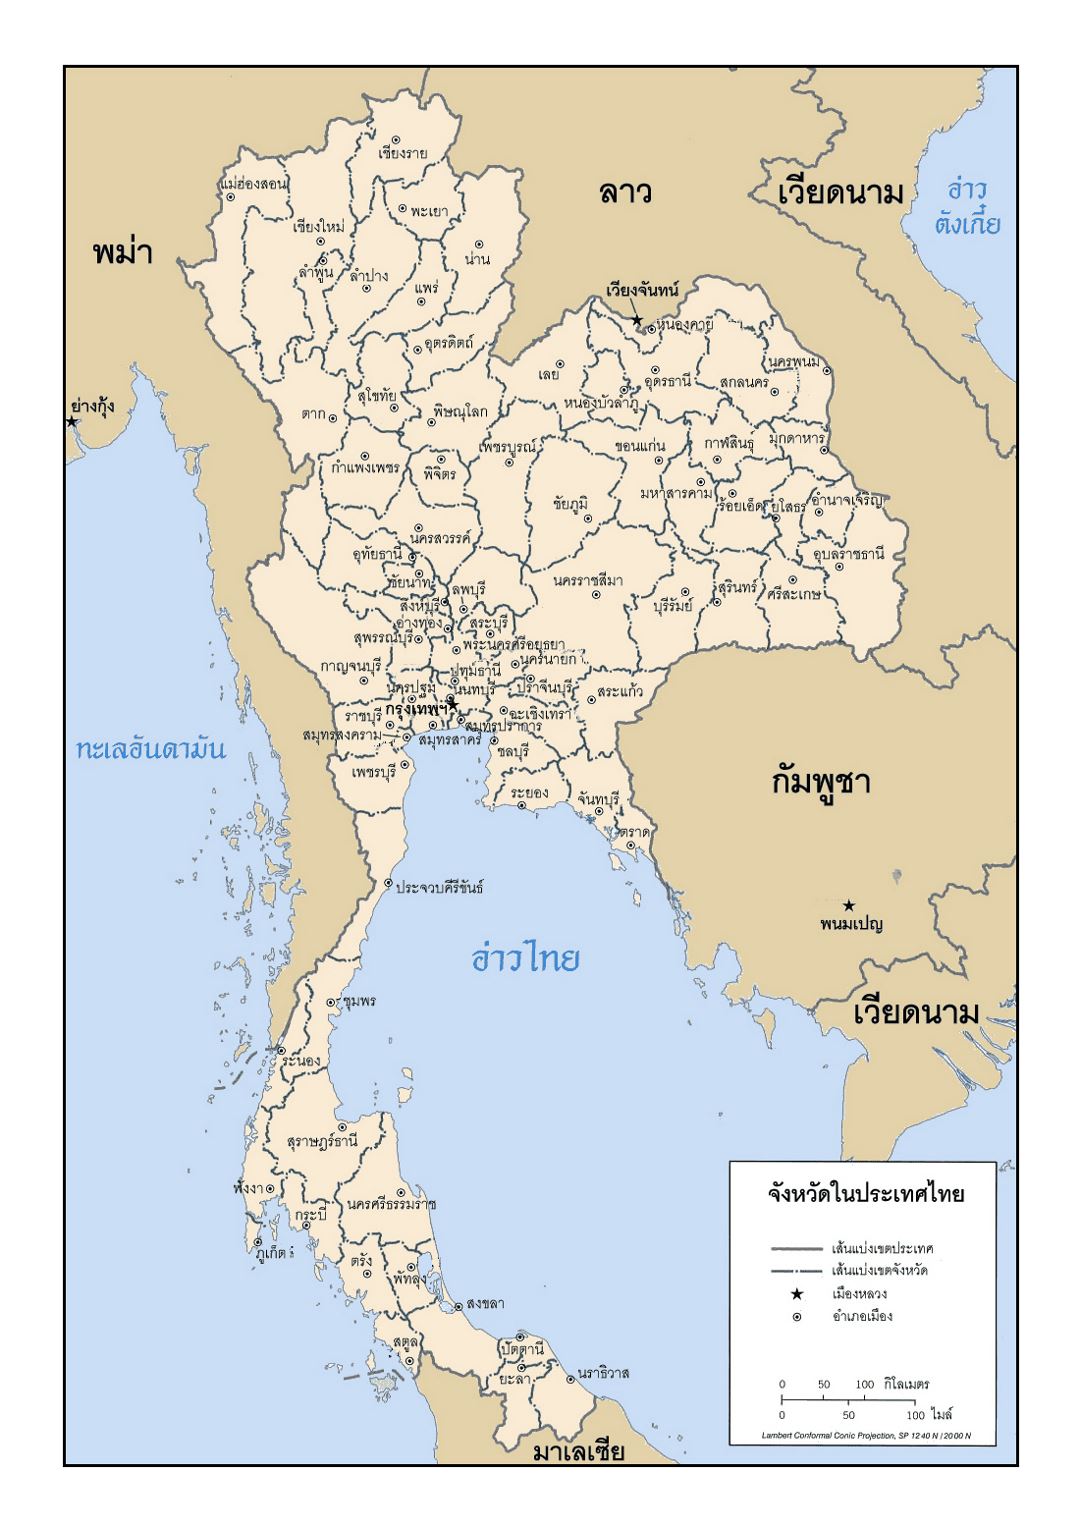 Detallado mapa administrativo de Tailandia en tailandés